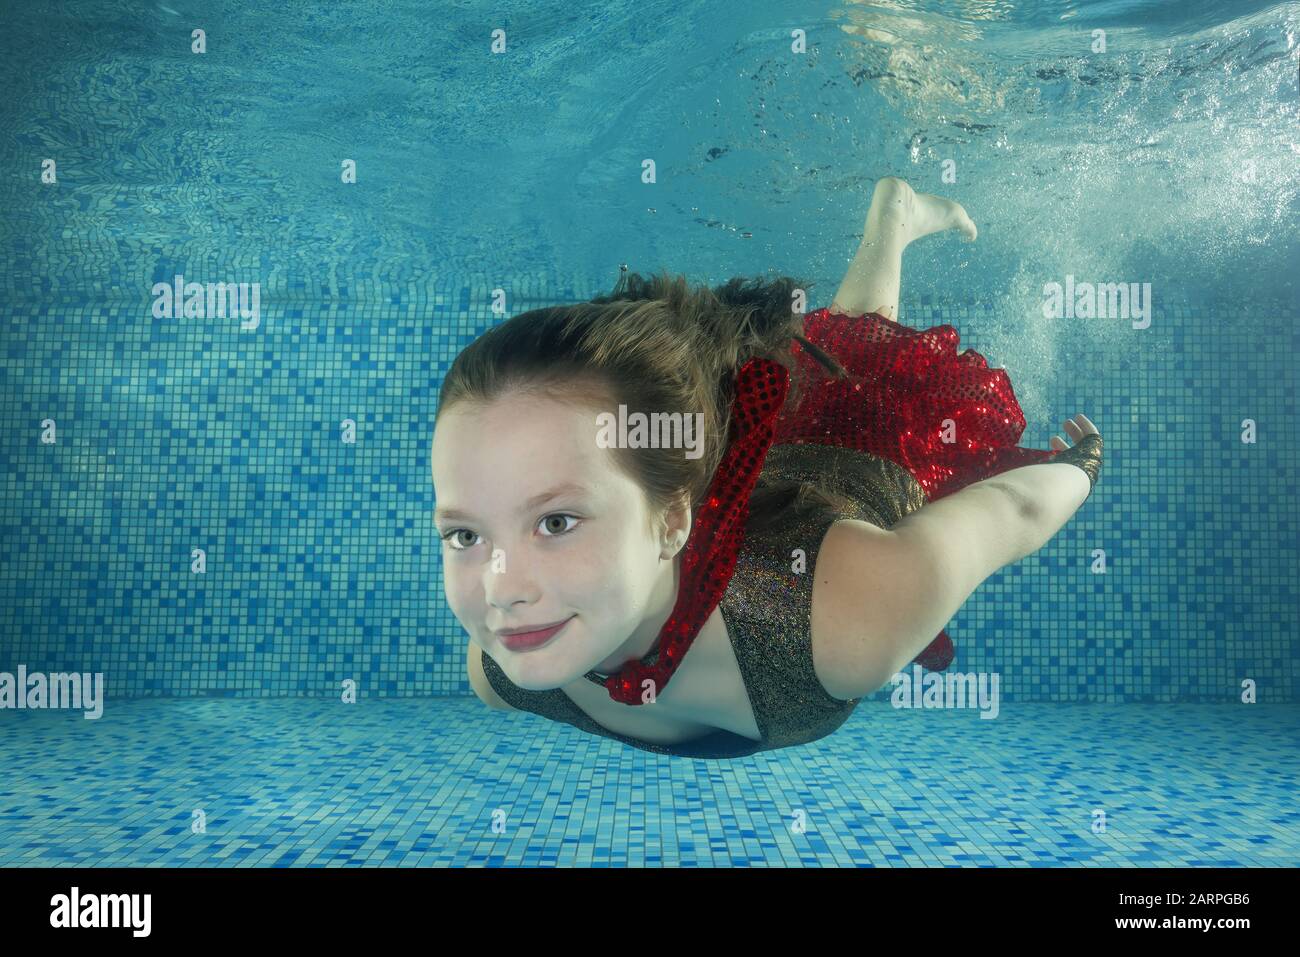 Mädchen In Rotem Kleid Schwimmt Unter Wasser Im Schwimmbad Stockfotografie Alamy